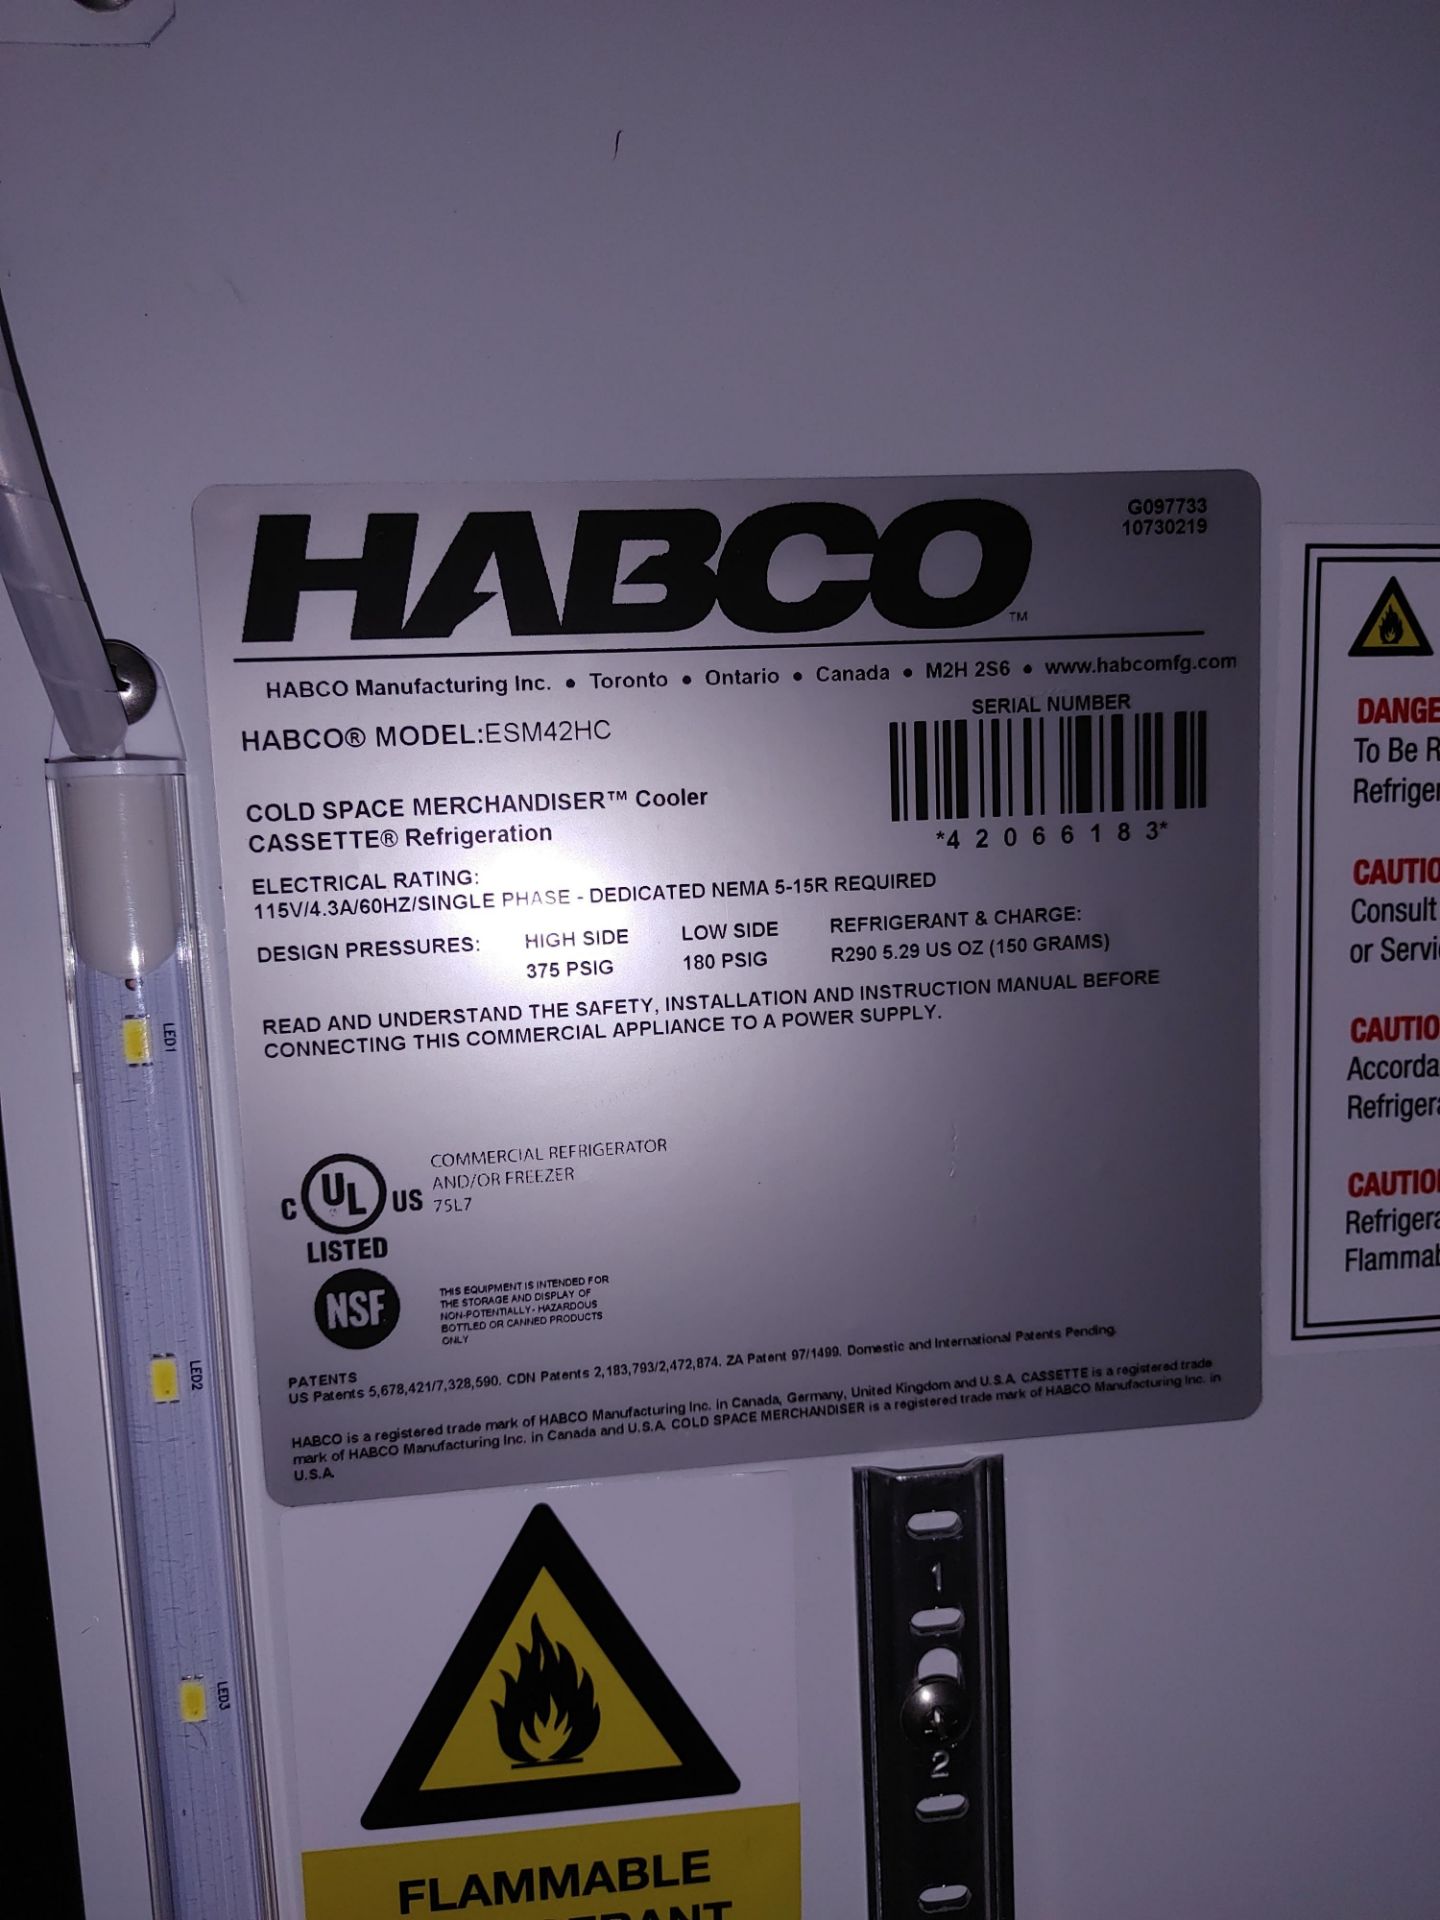 Habco "ESM42HC" 2 Door Refrigerator S/N 42066183 - Image 2 of 2